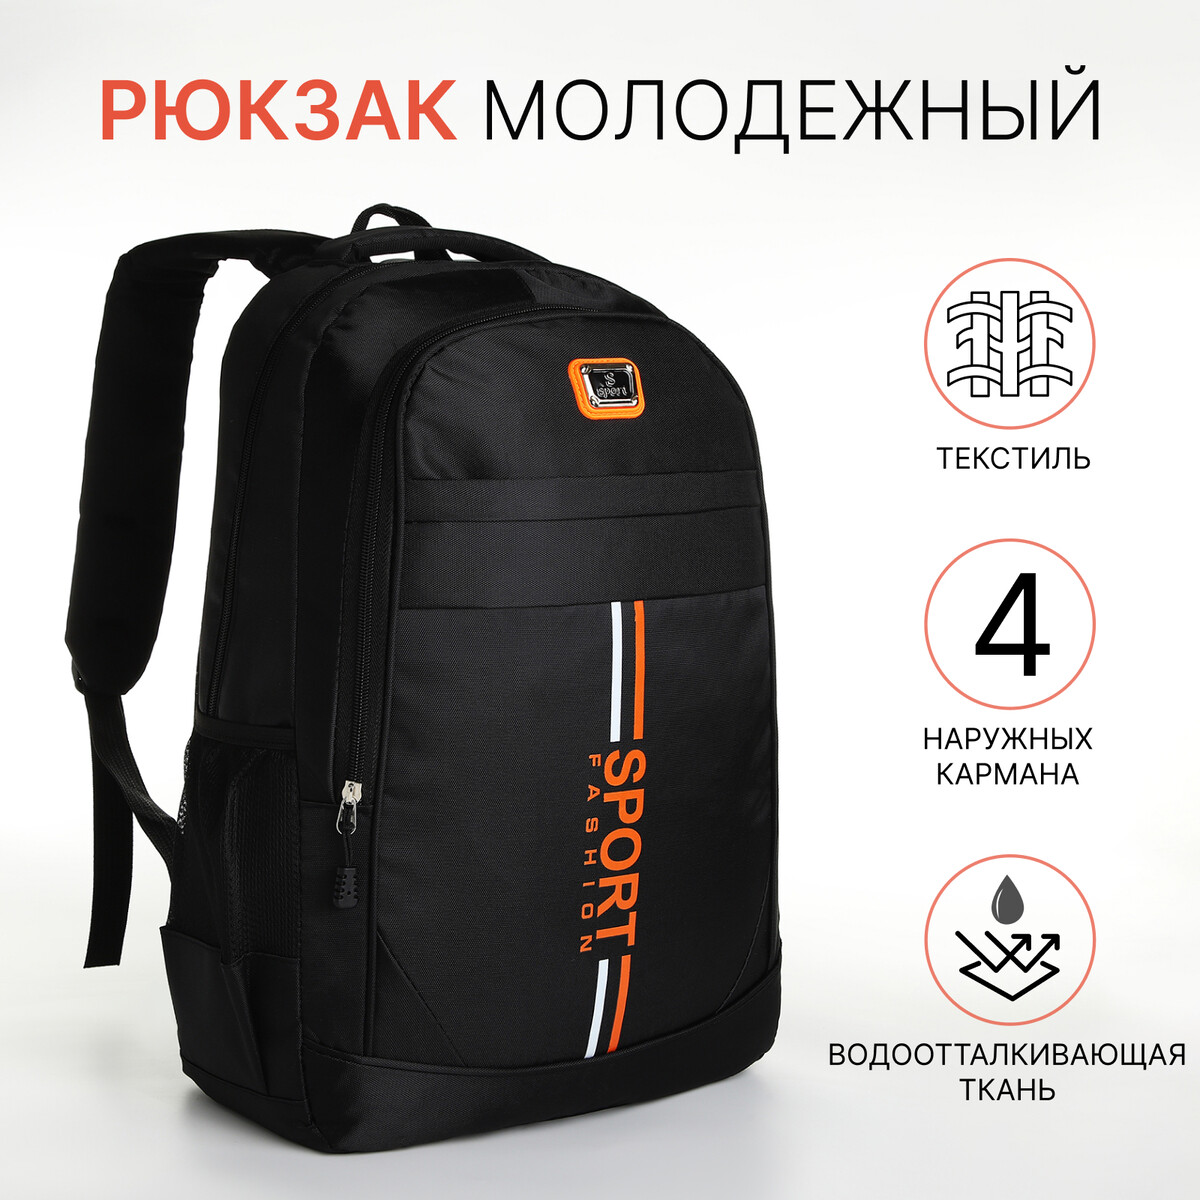 Рюкзак молодежный на молнии, 4 кармана, цвет черный/оранжевый рюкзак молодежный grizzly анатомический оранжевый rb 456 4 1